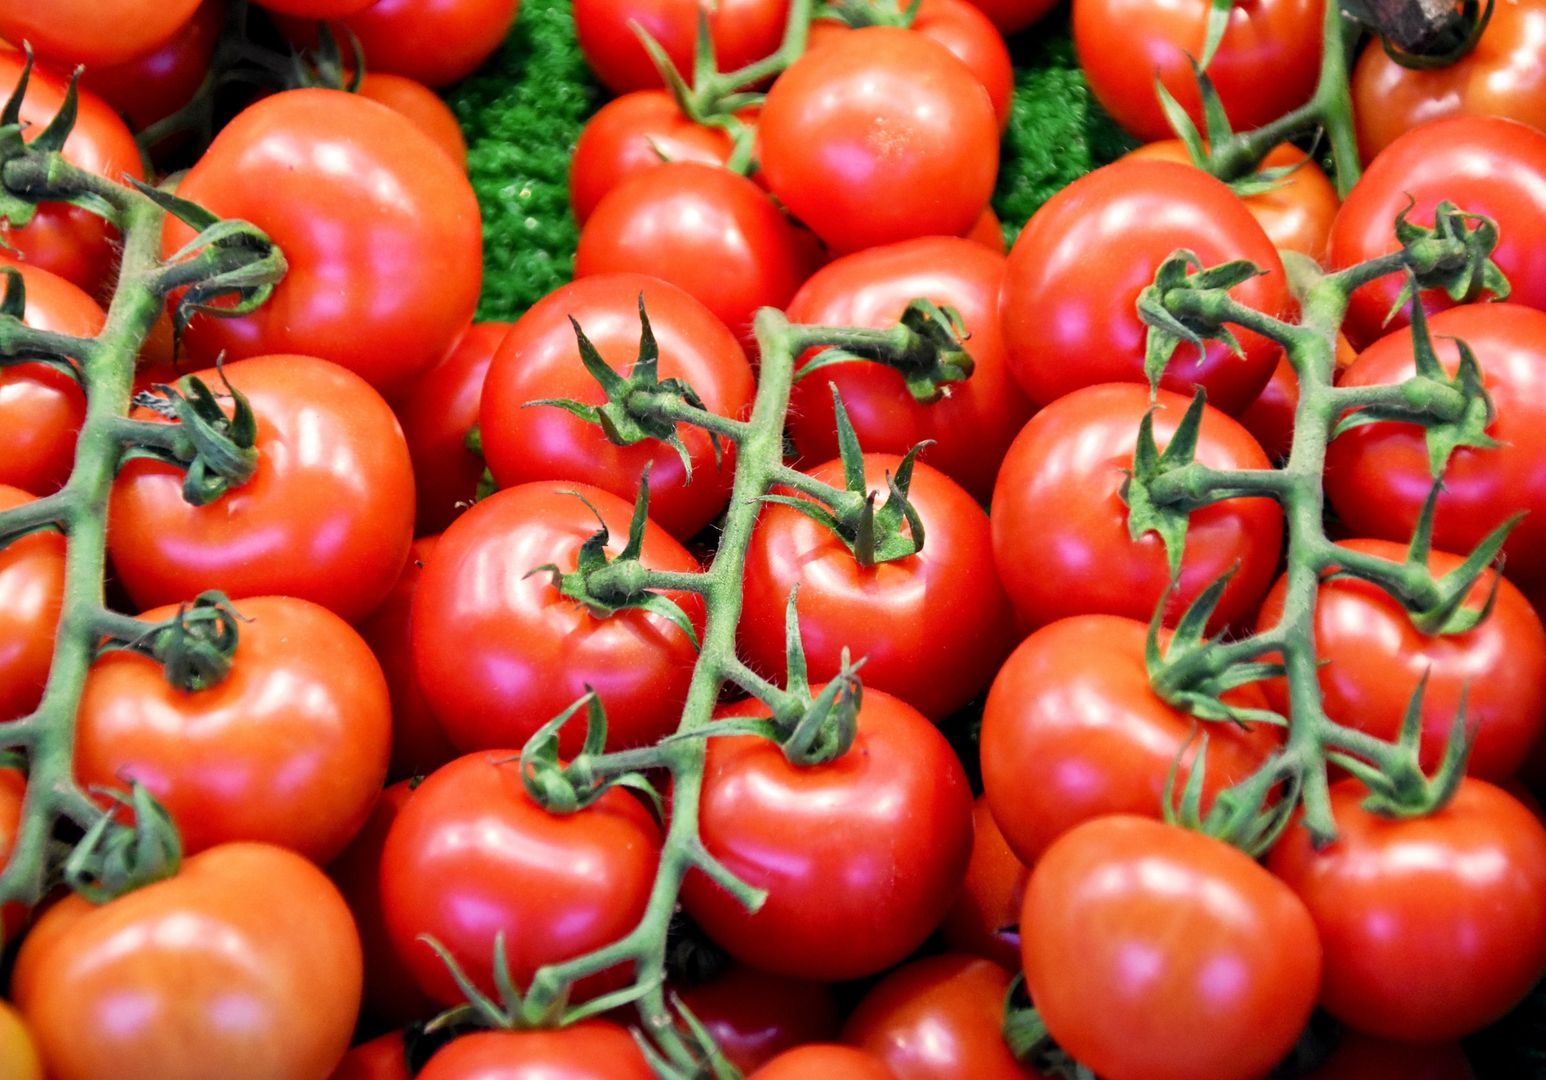 Polskie pomidory za 80 zł. Wiosną czekają nas podwyżki